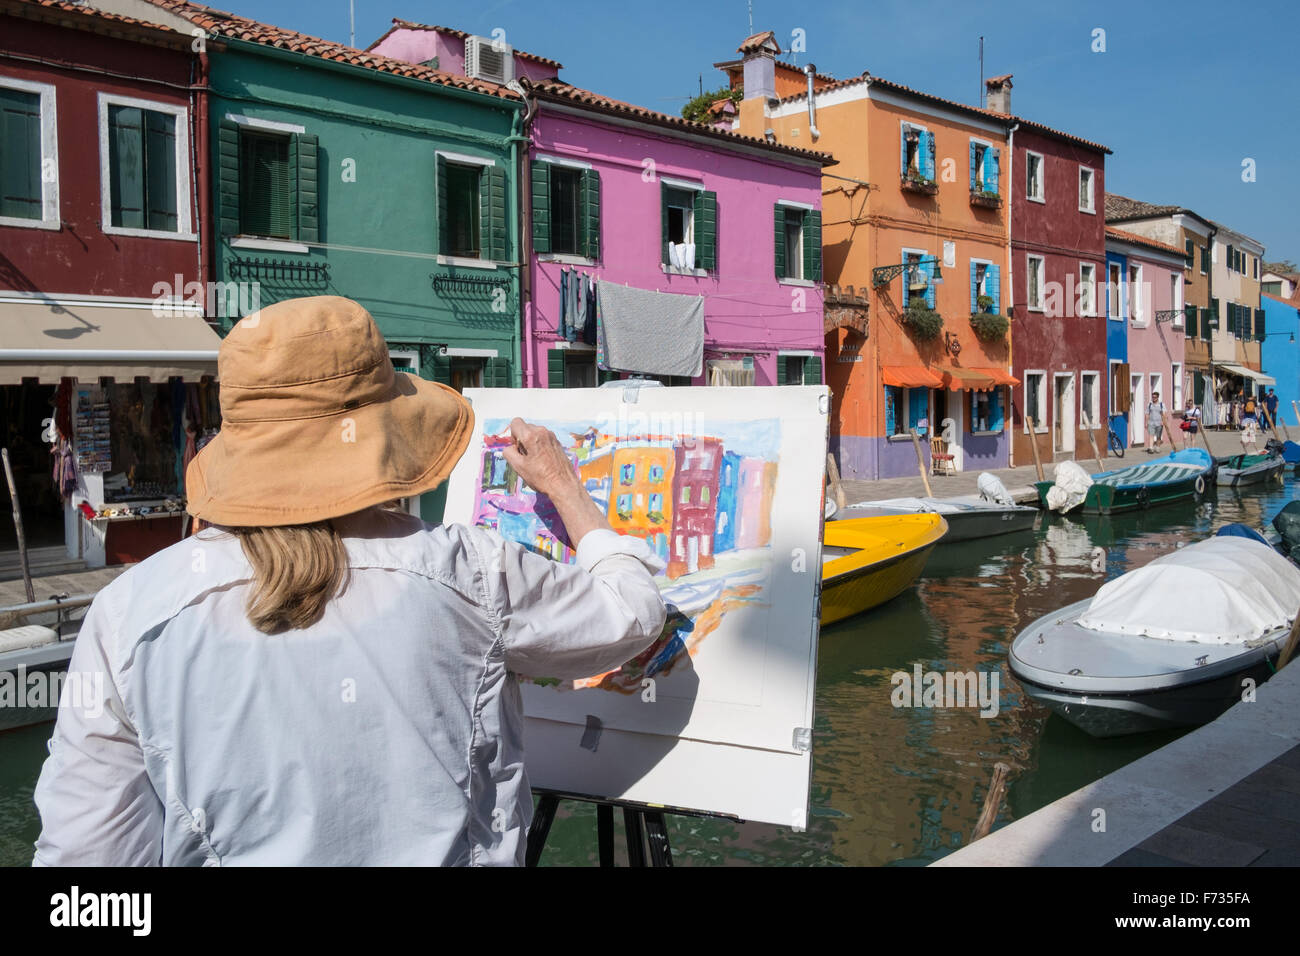 La pittura dell'artista sull'isola di Burano, Venezia, Italia. Foto Stock